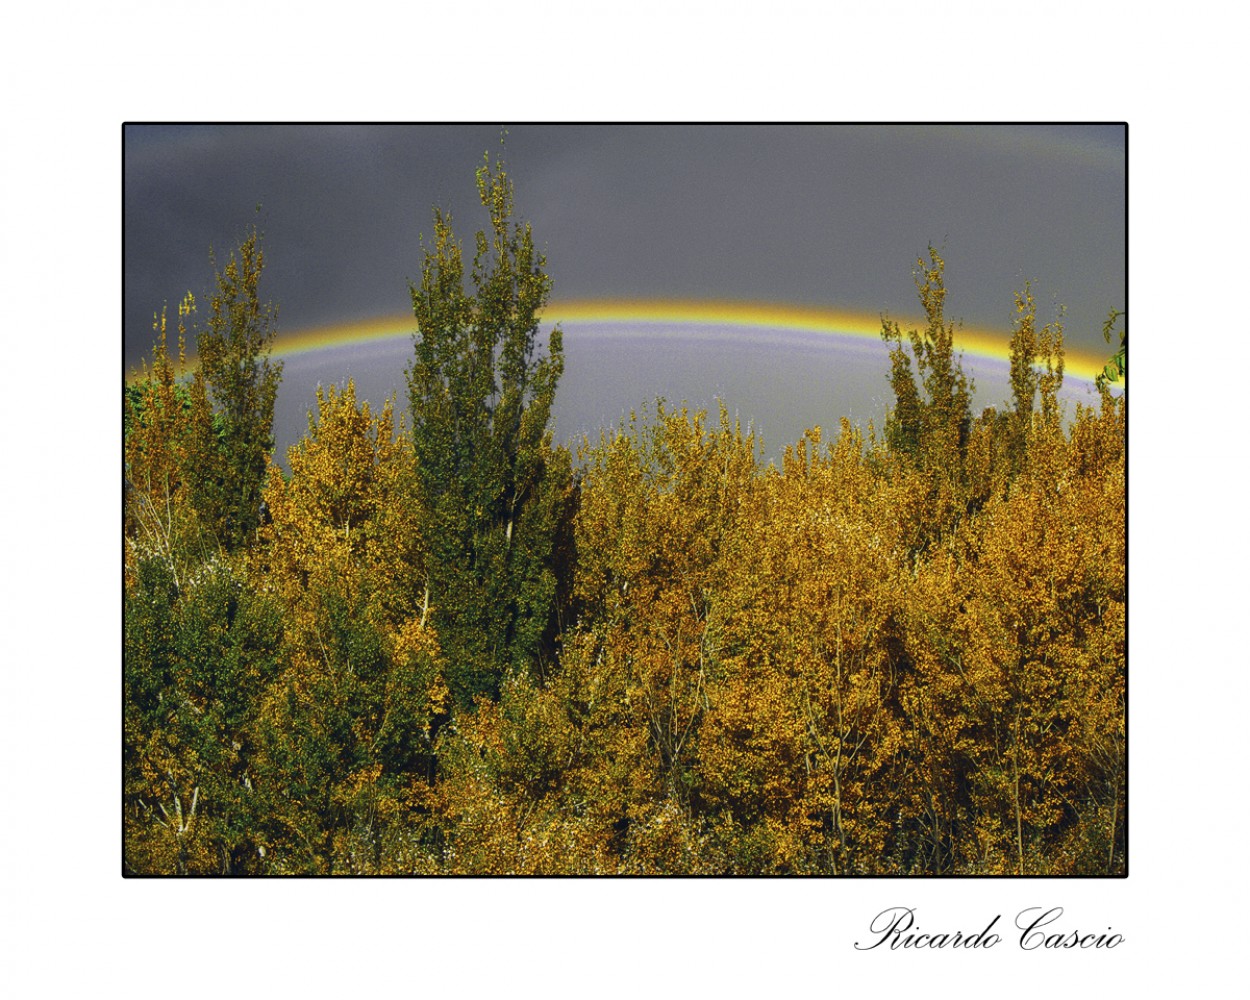 "Mas all del arcoiris" de Ricardo Cascio